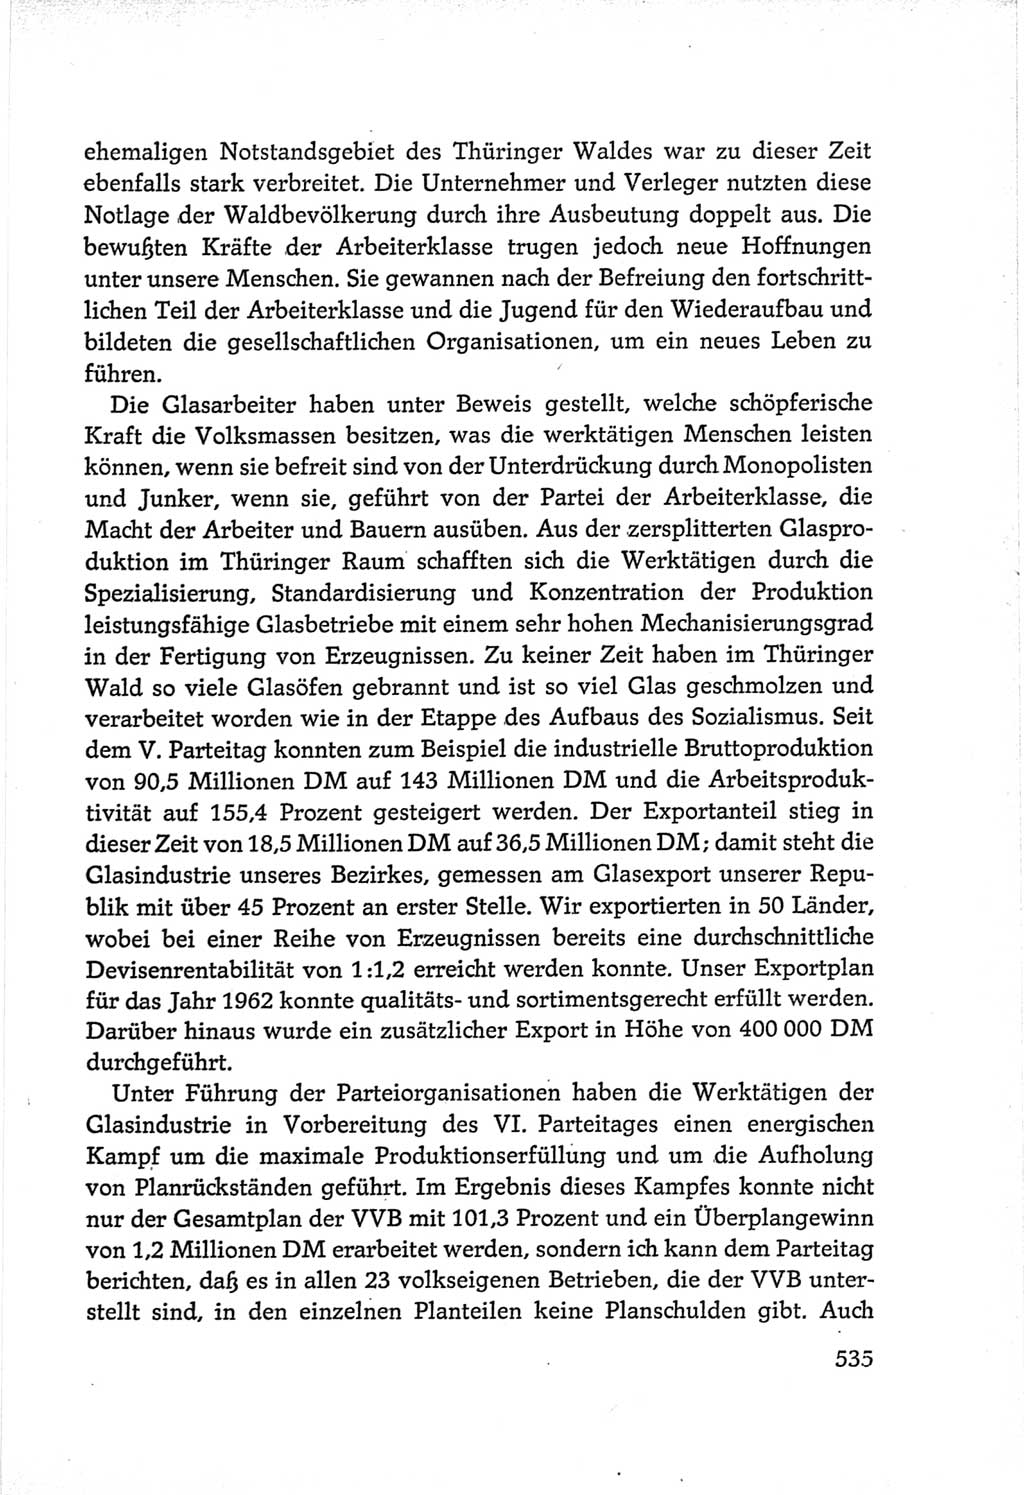 Protokoll der Verhandlungen des Ⅵ. Parteitages der Sozialistischen Einheitspartei Deutschlands (SED) [Deutsche Demokratische Republik (DDR)] 1963, Band Ⅲ, Seite 535 (Prot. Verh. Ⅵ. PT SED DDR 1963, Bd. Ⅲ, S. 535)